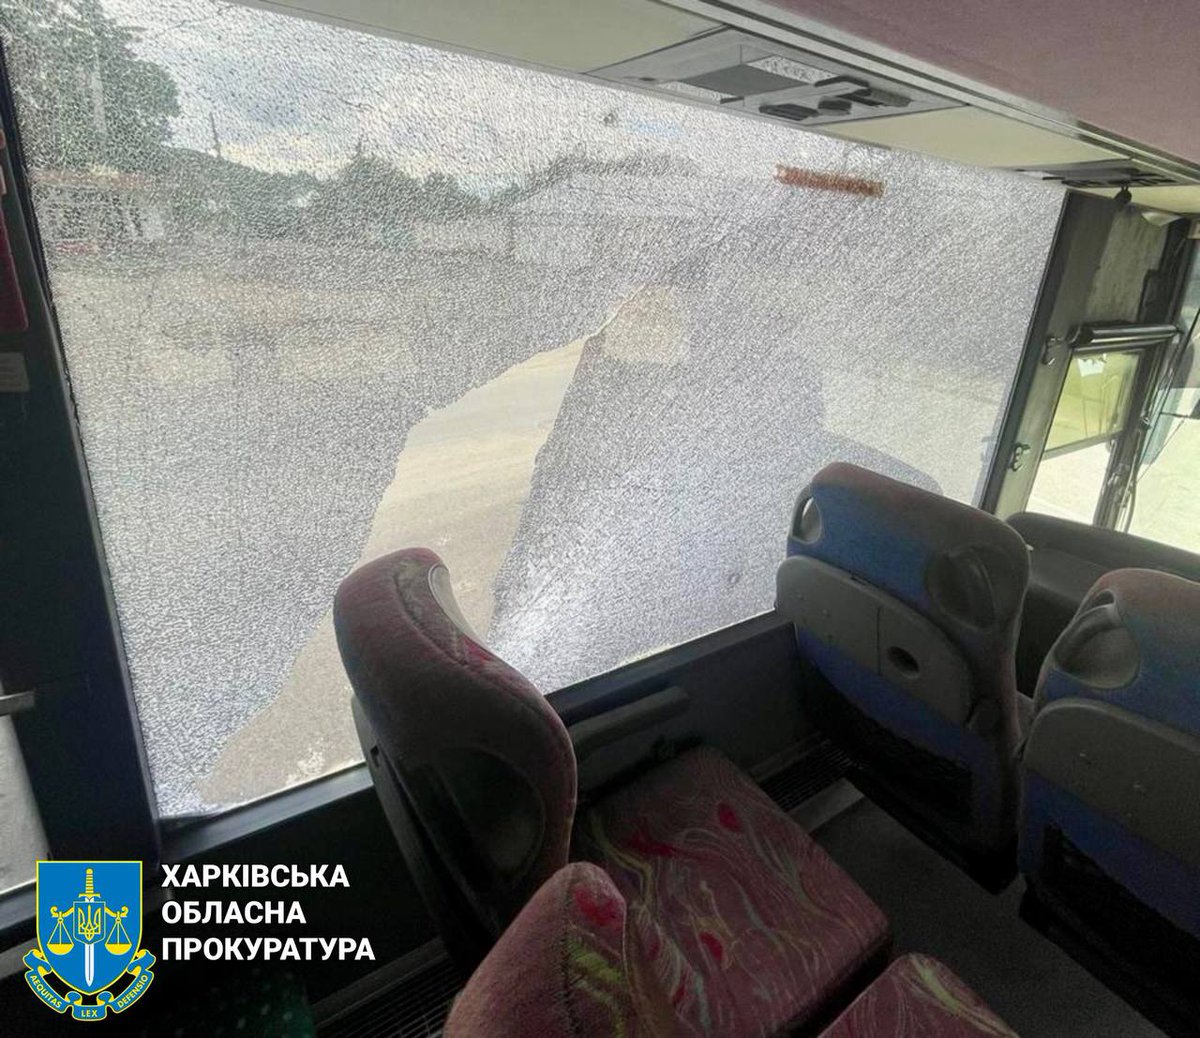 Трима ранени, включително 2 полицаи, в резултат на нападение с дрон в Купянск вчера